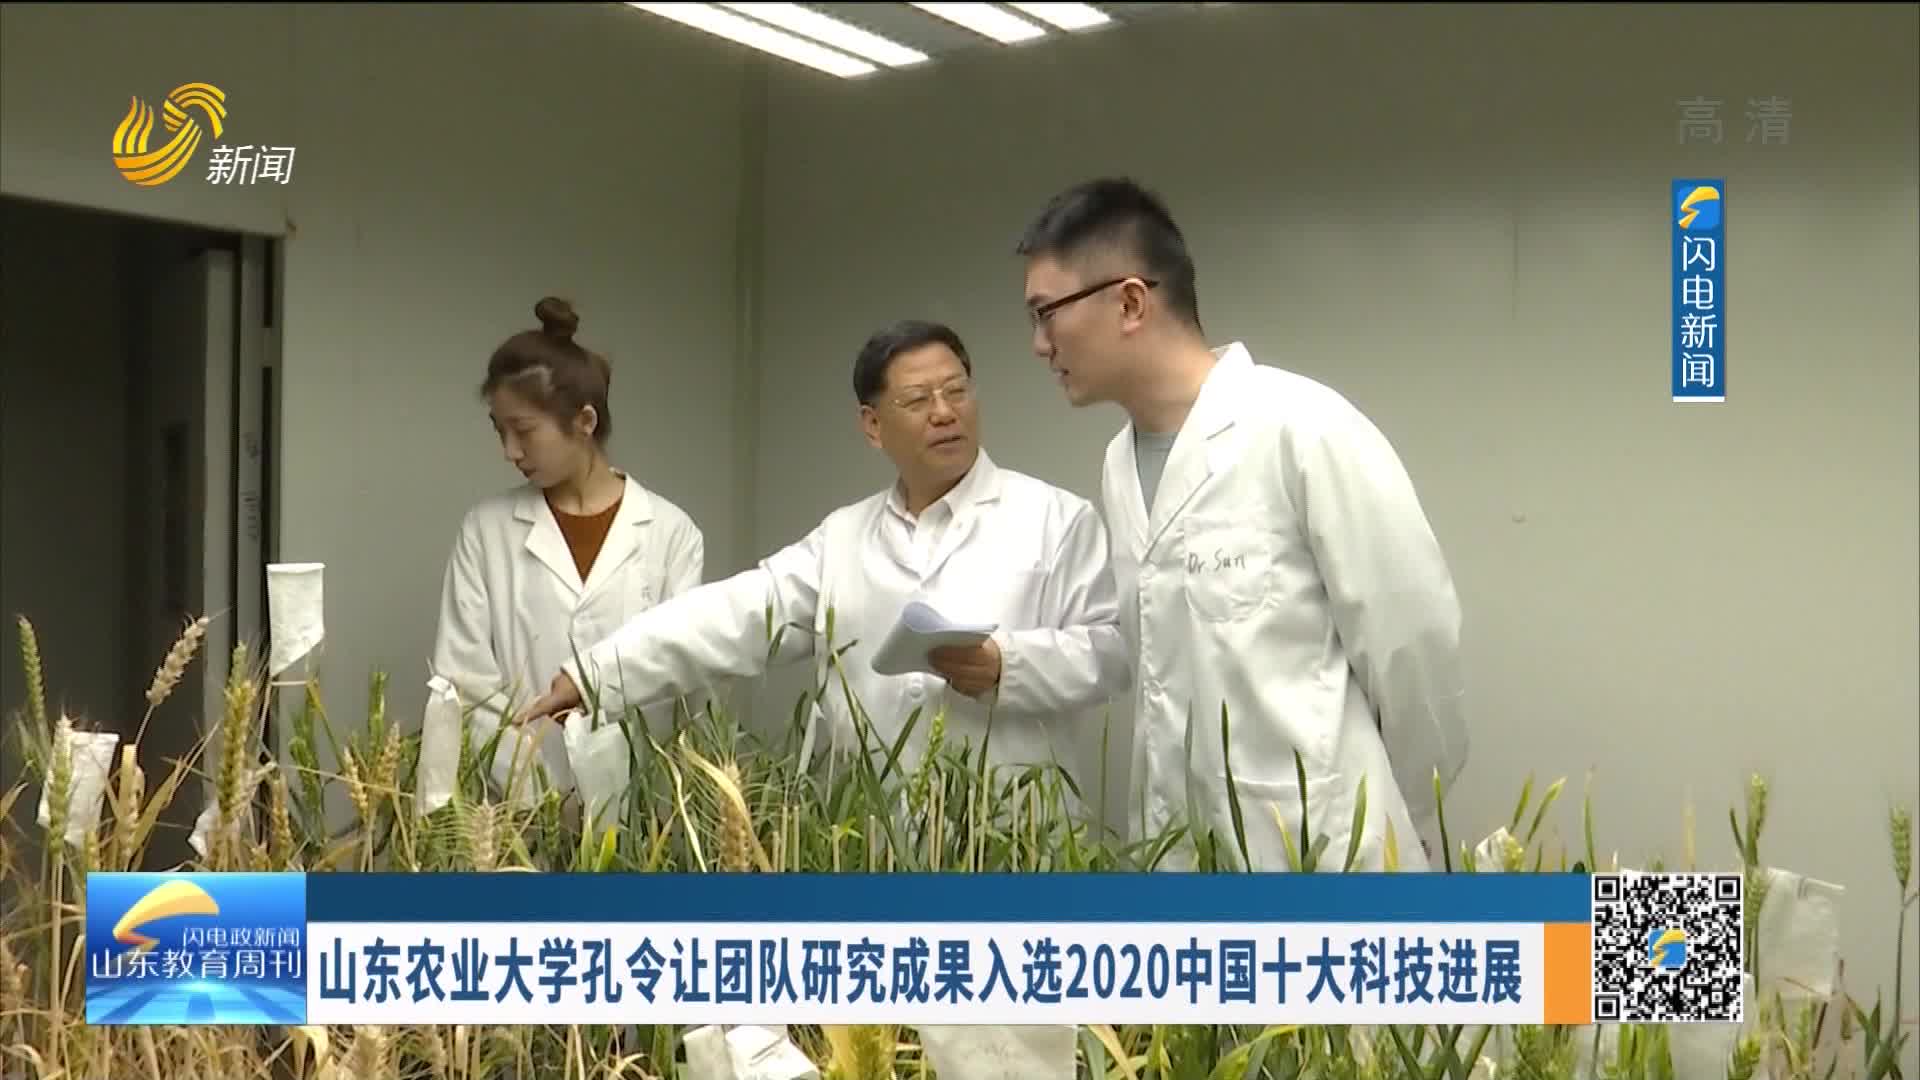 山东农业大学孔令让团队研究成果入选2020中国十大科技进展